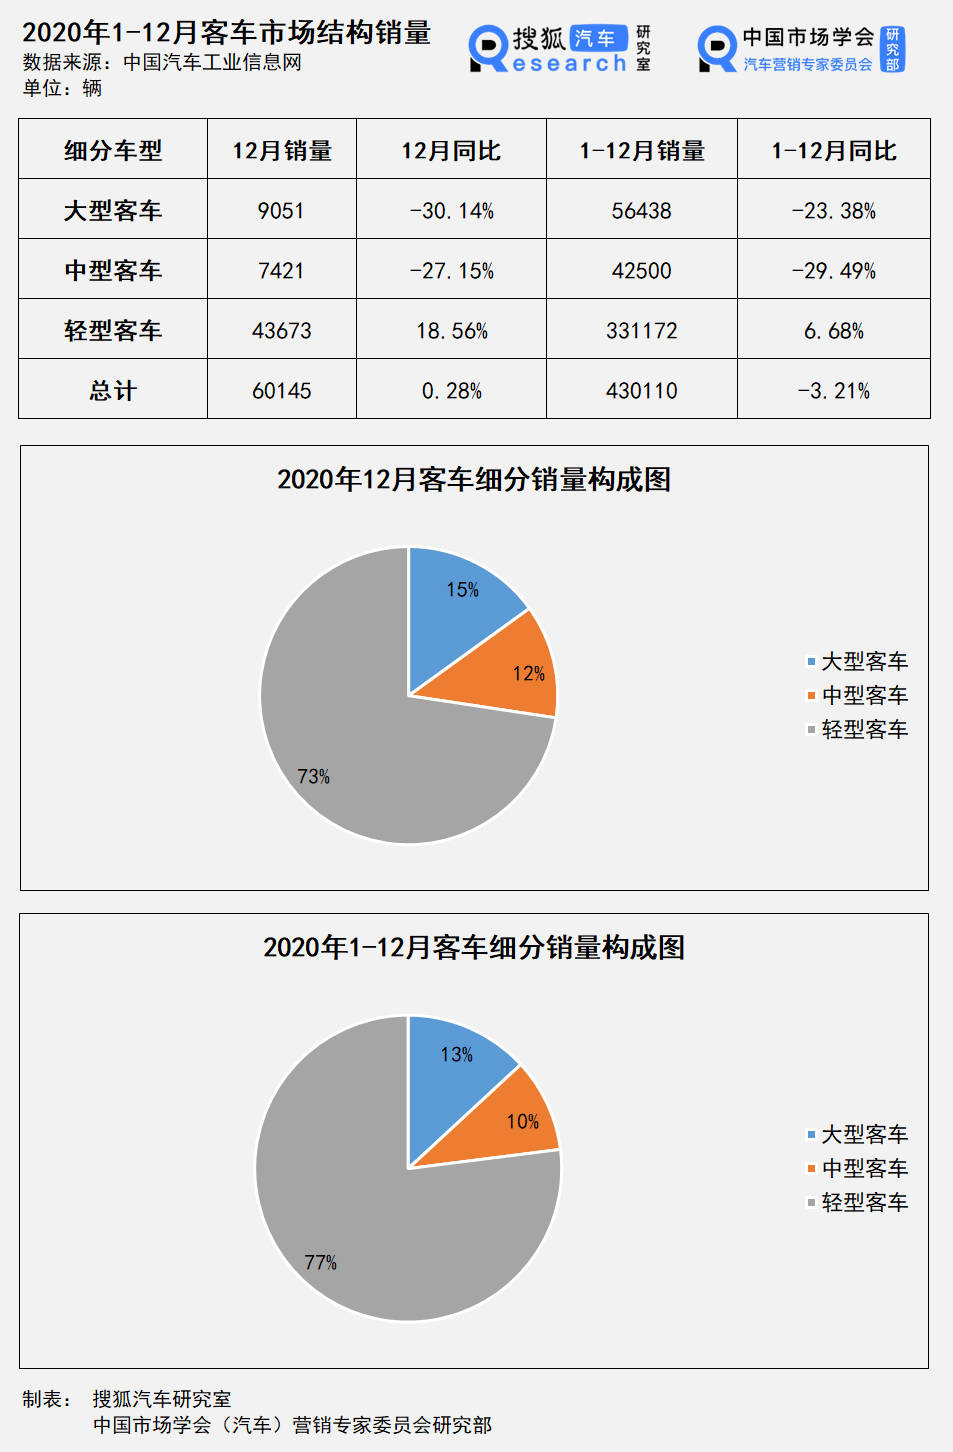 31省区市昨日新增本土确诊1803例,其中上海355例